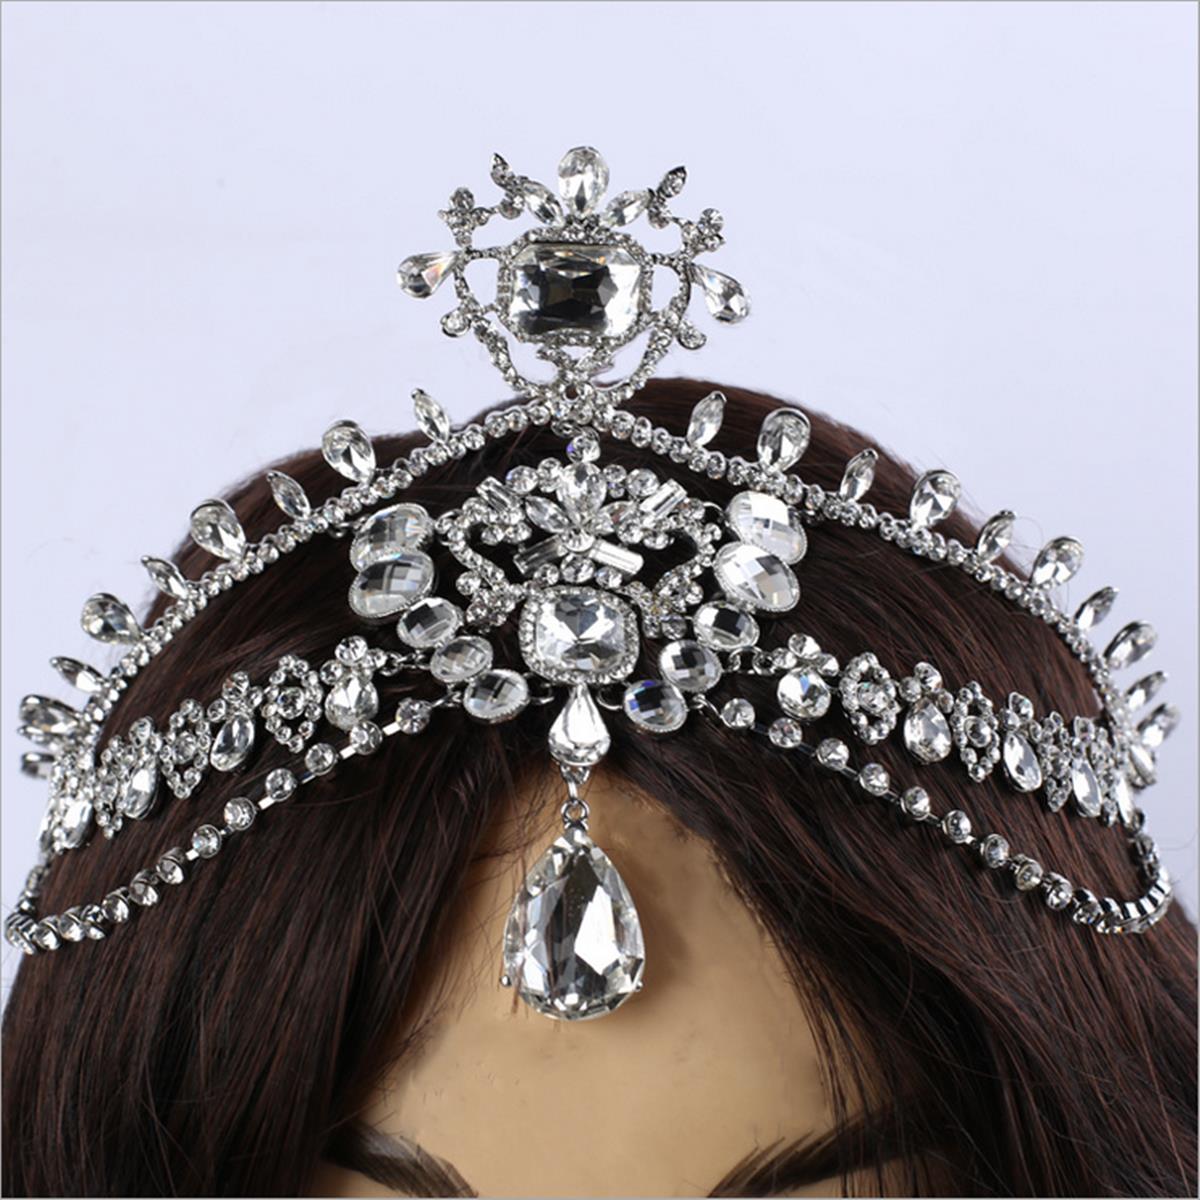 

Невеста алмаз игристое кристалл горный хрусталь волосы цепь король королева тиару свадьба головной убор